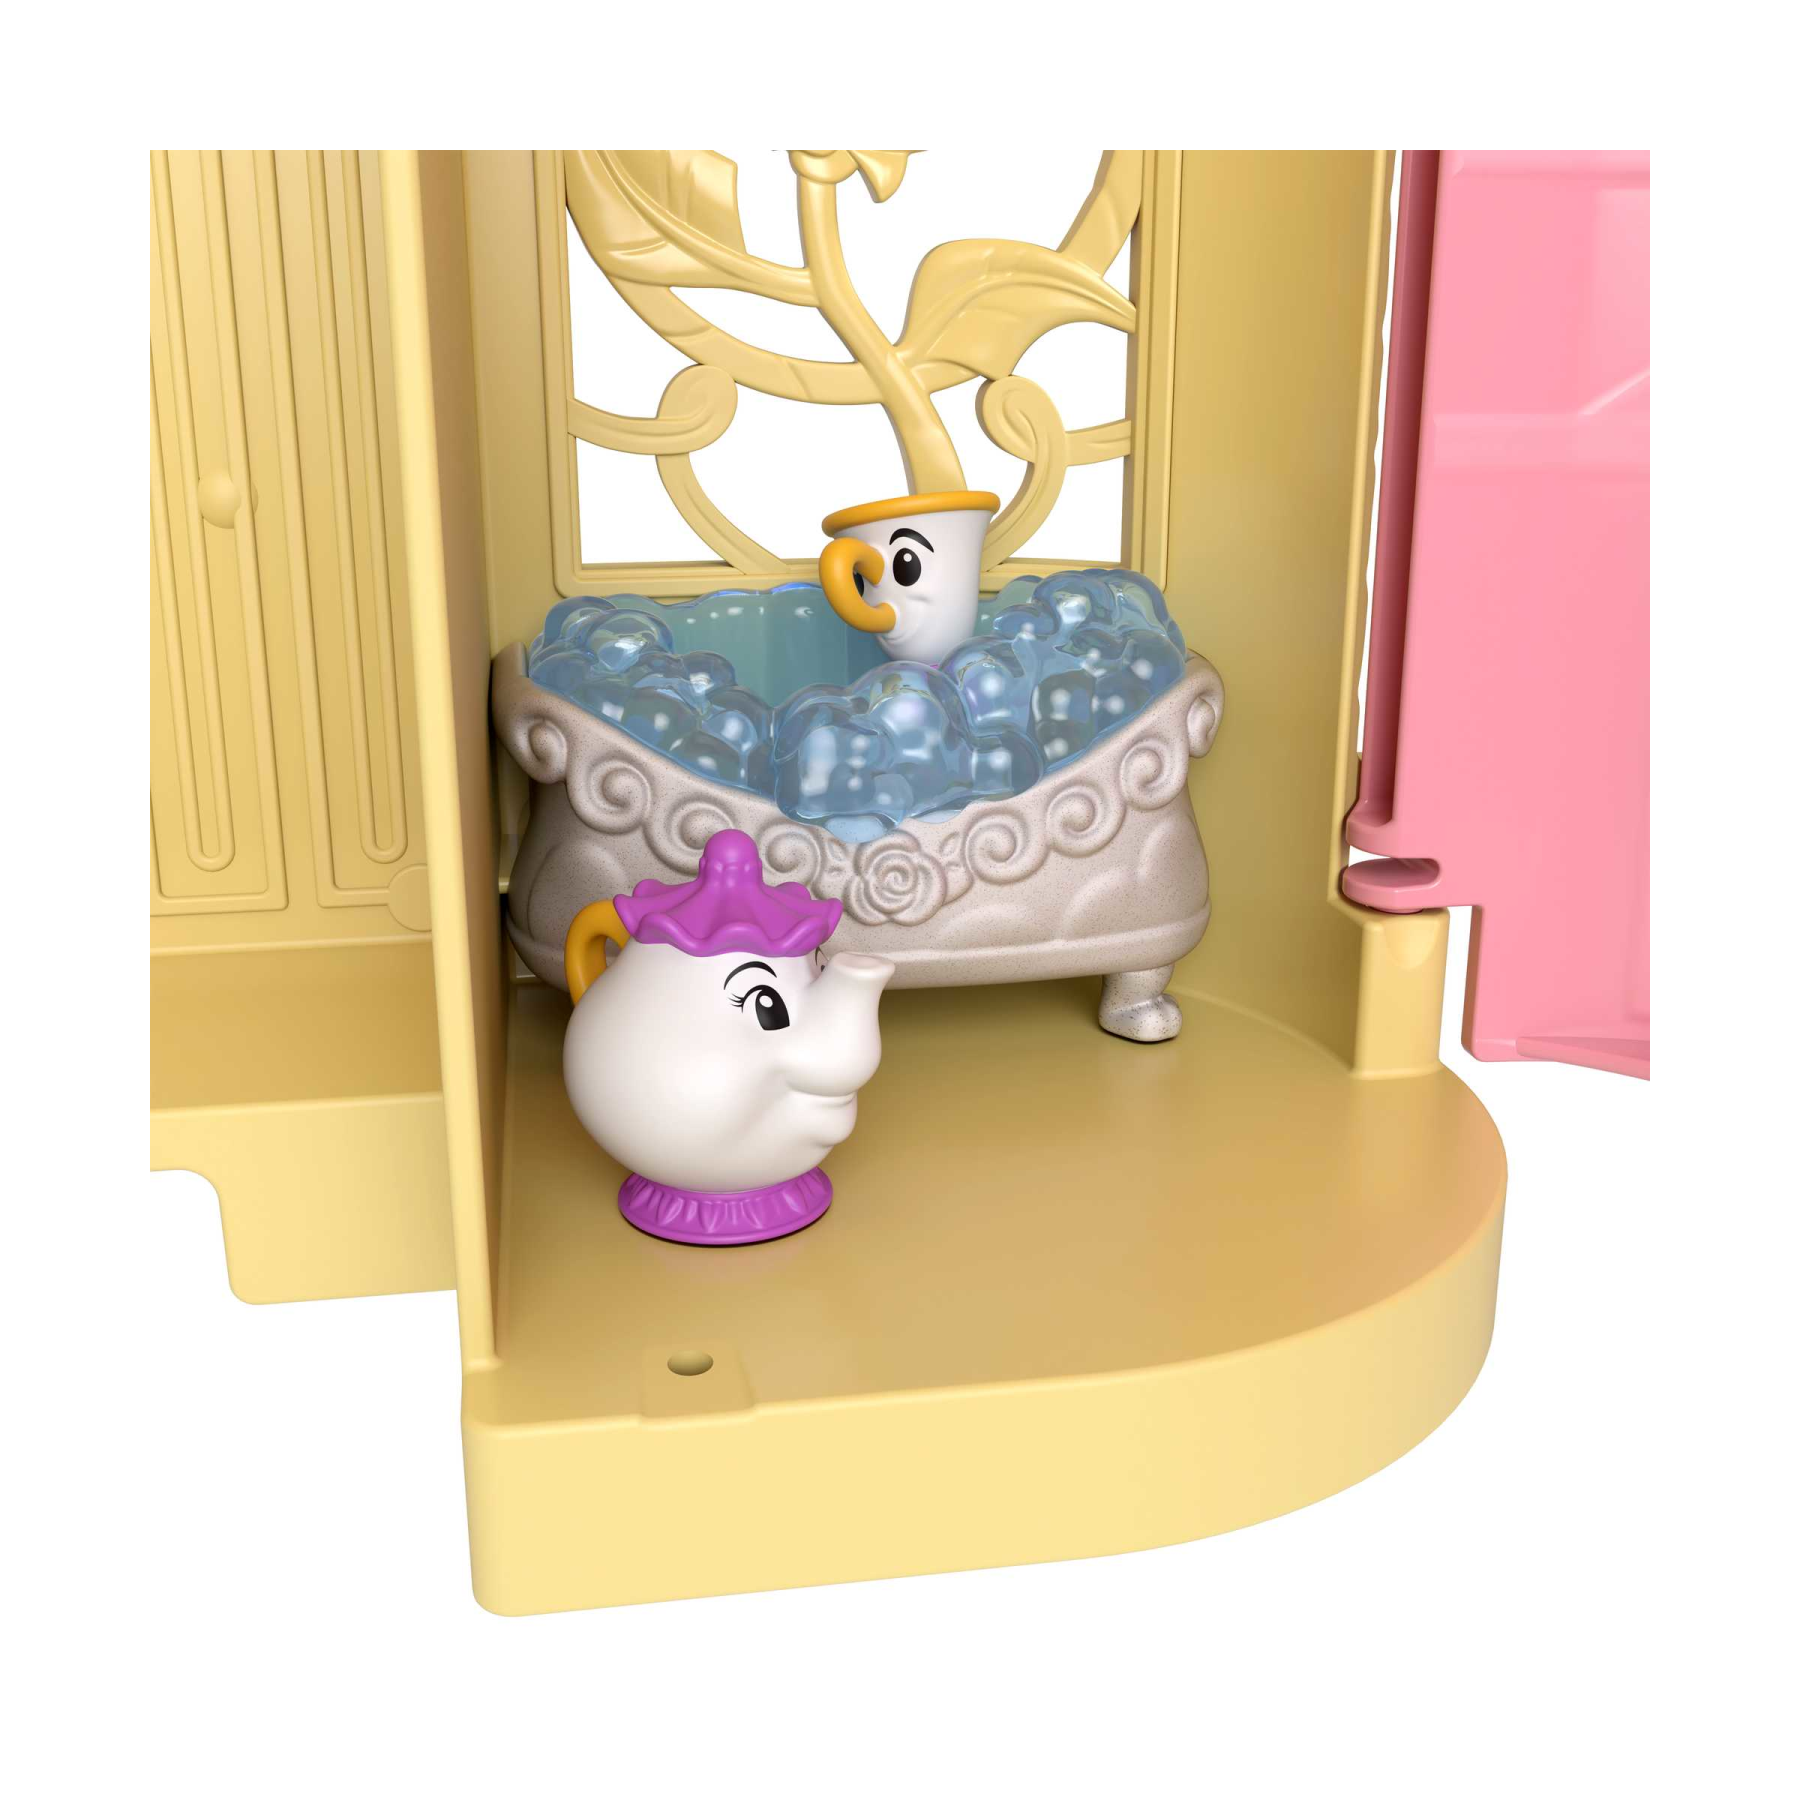 Disney princess - set componibili il castello di belle, playset trasportabile con bambola belle, 4 amici e tanti accessori, giocattolo per bambini, 3+ anni, hlw94 - DISNEY PRINCESS